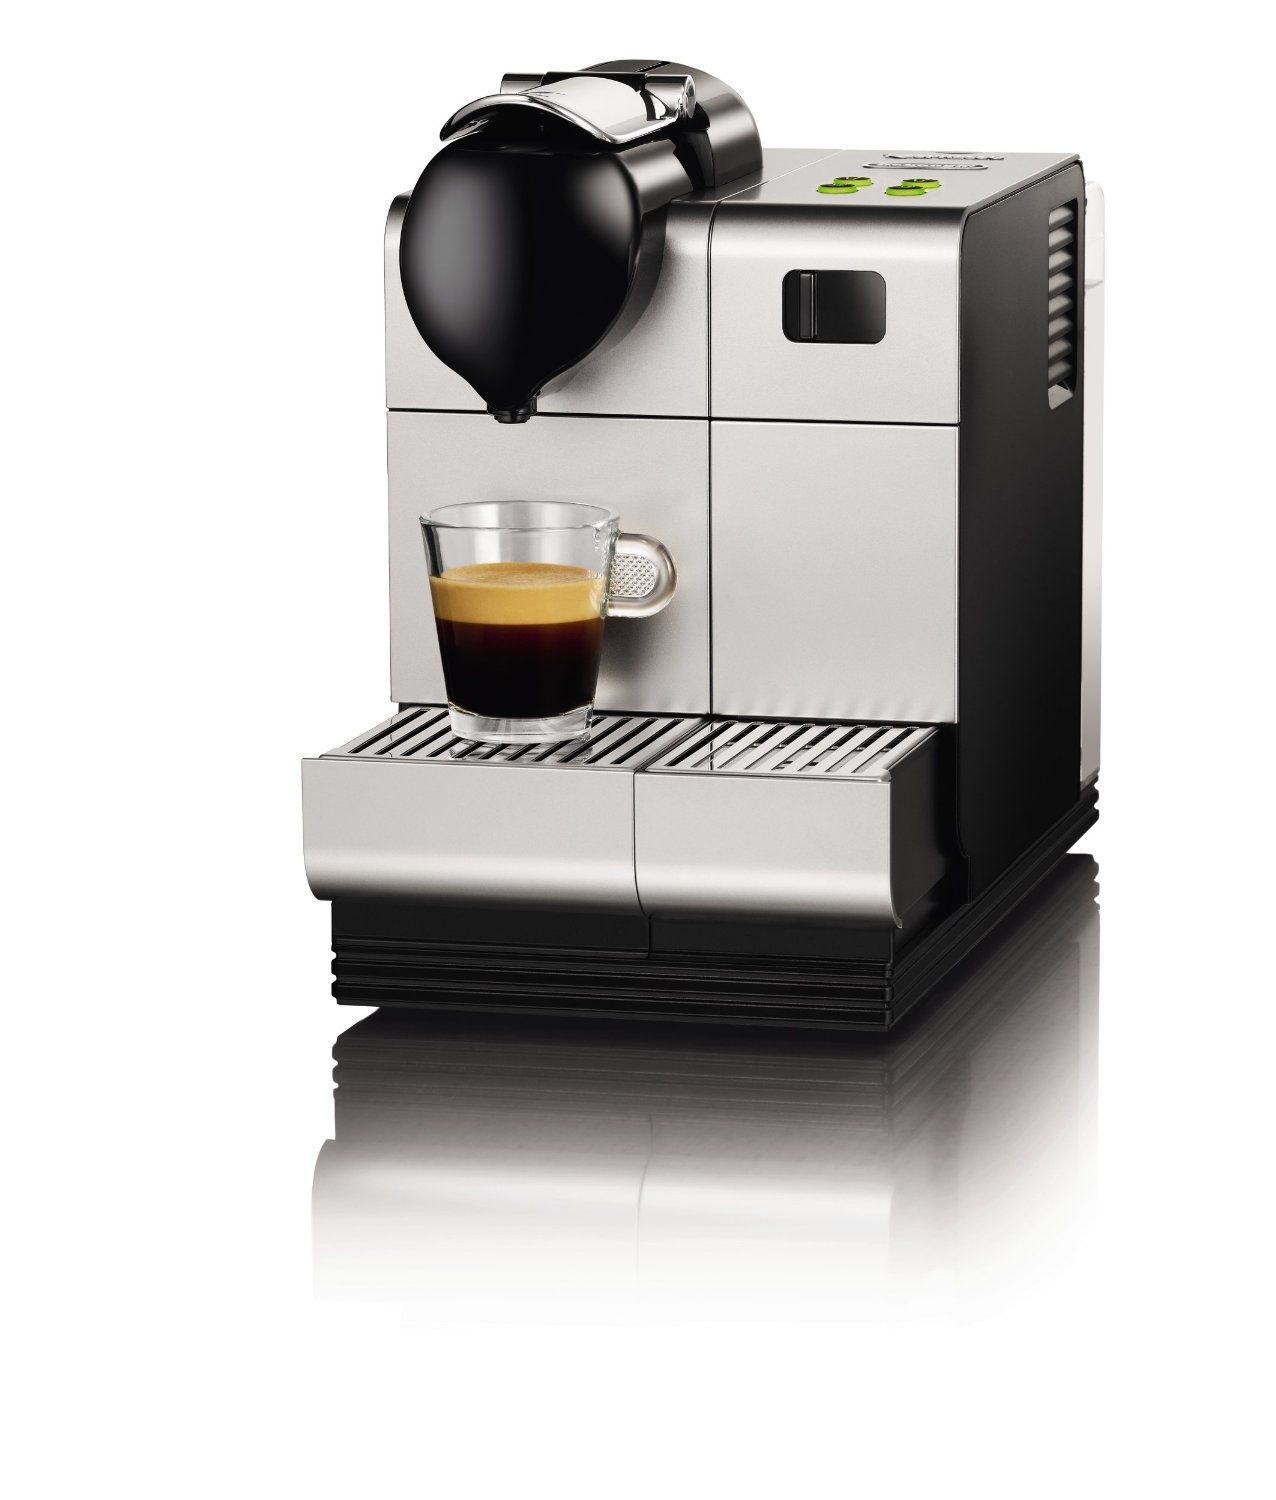 Delonghi_EN520S_nespresso_capsules_cappuccino_systeme_brevete